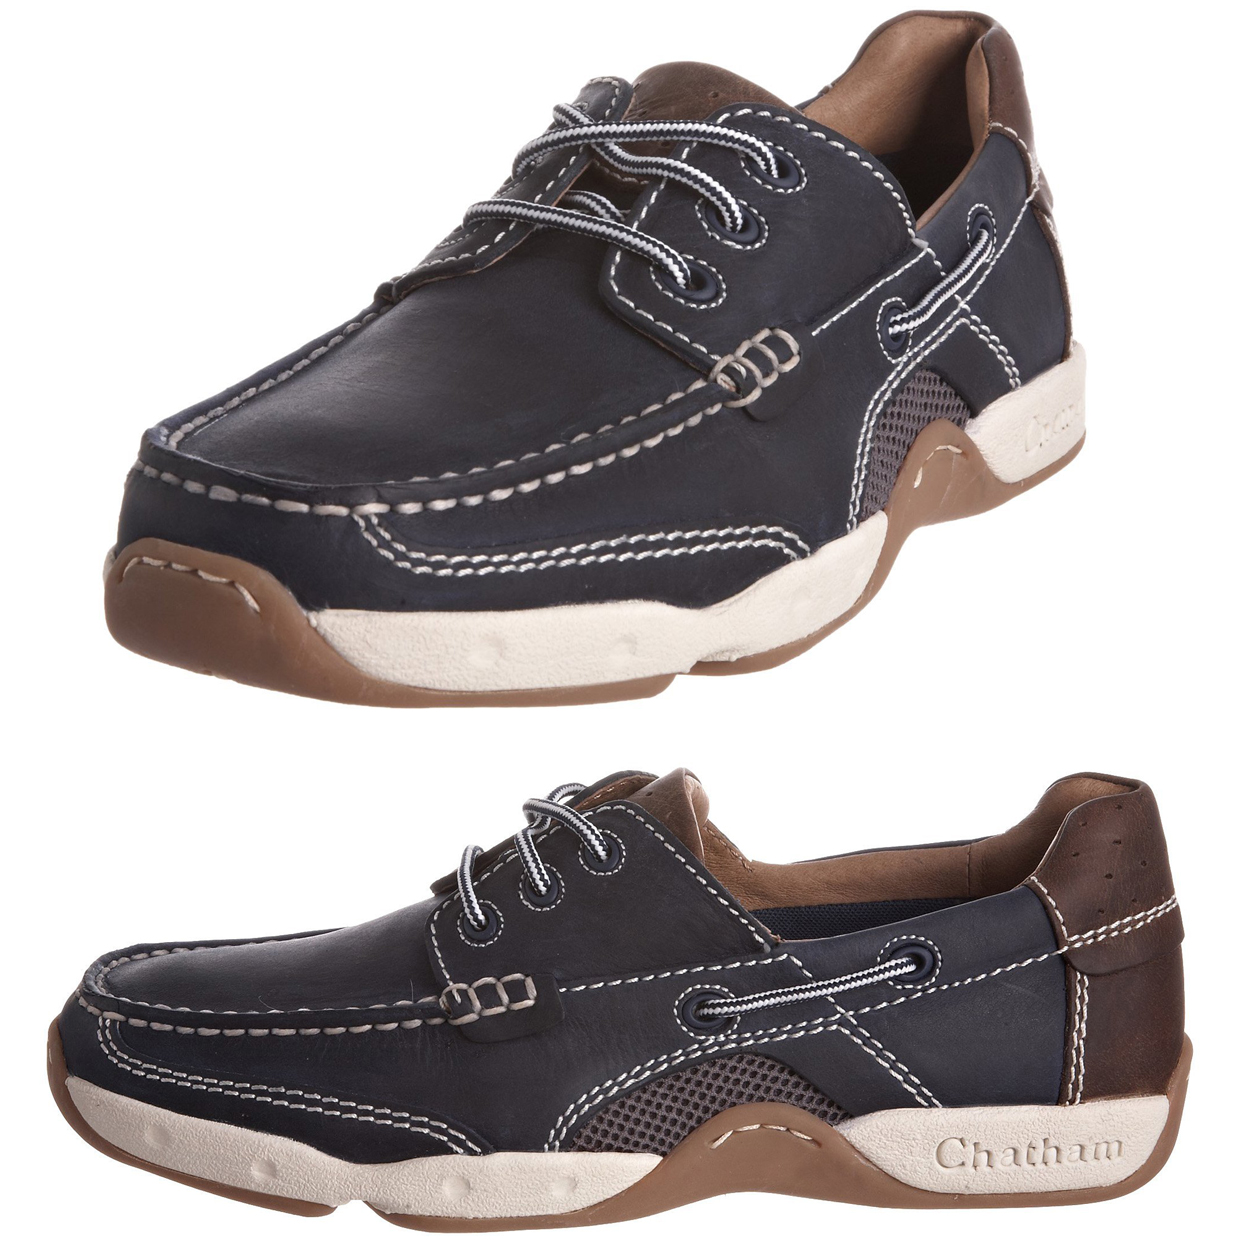 mens leather deck shoes sale